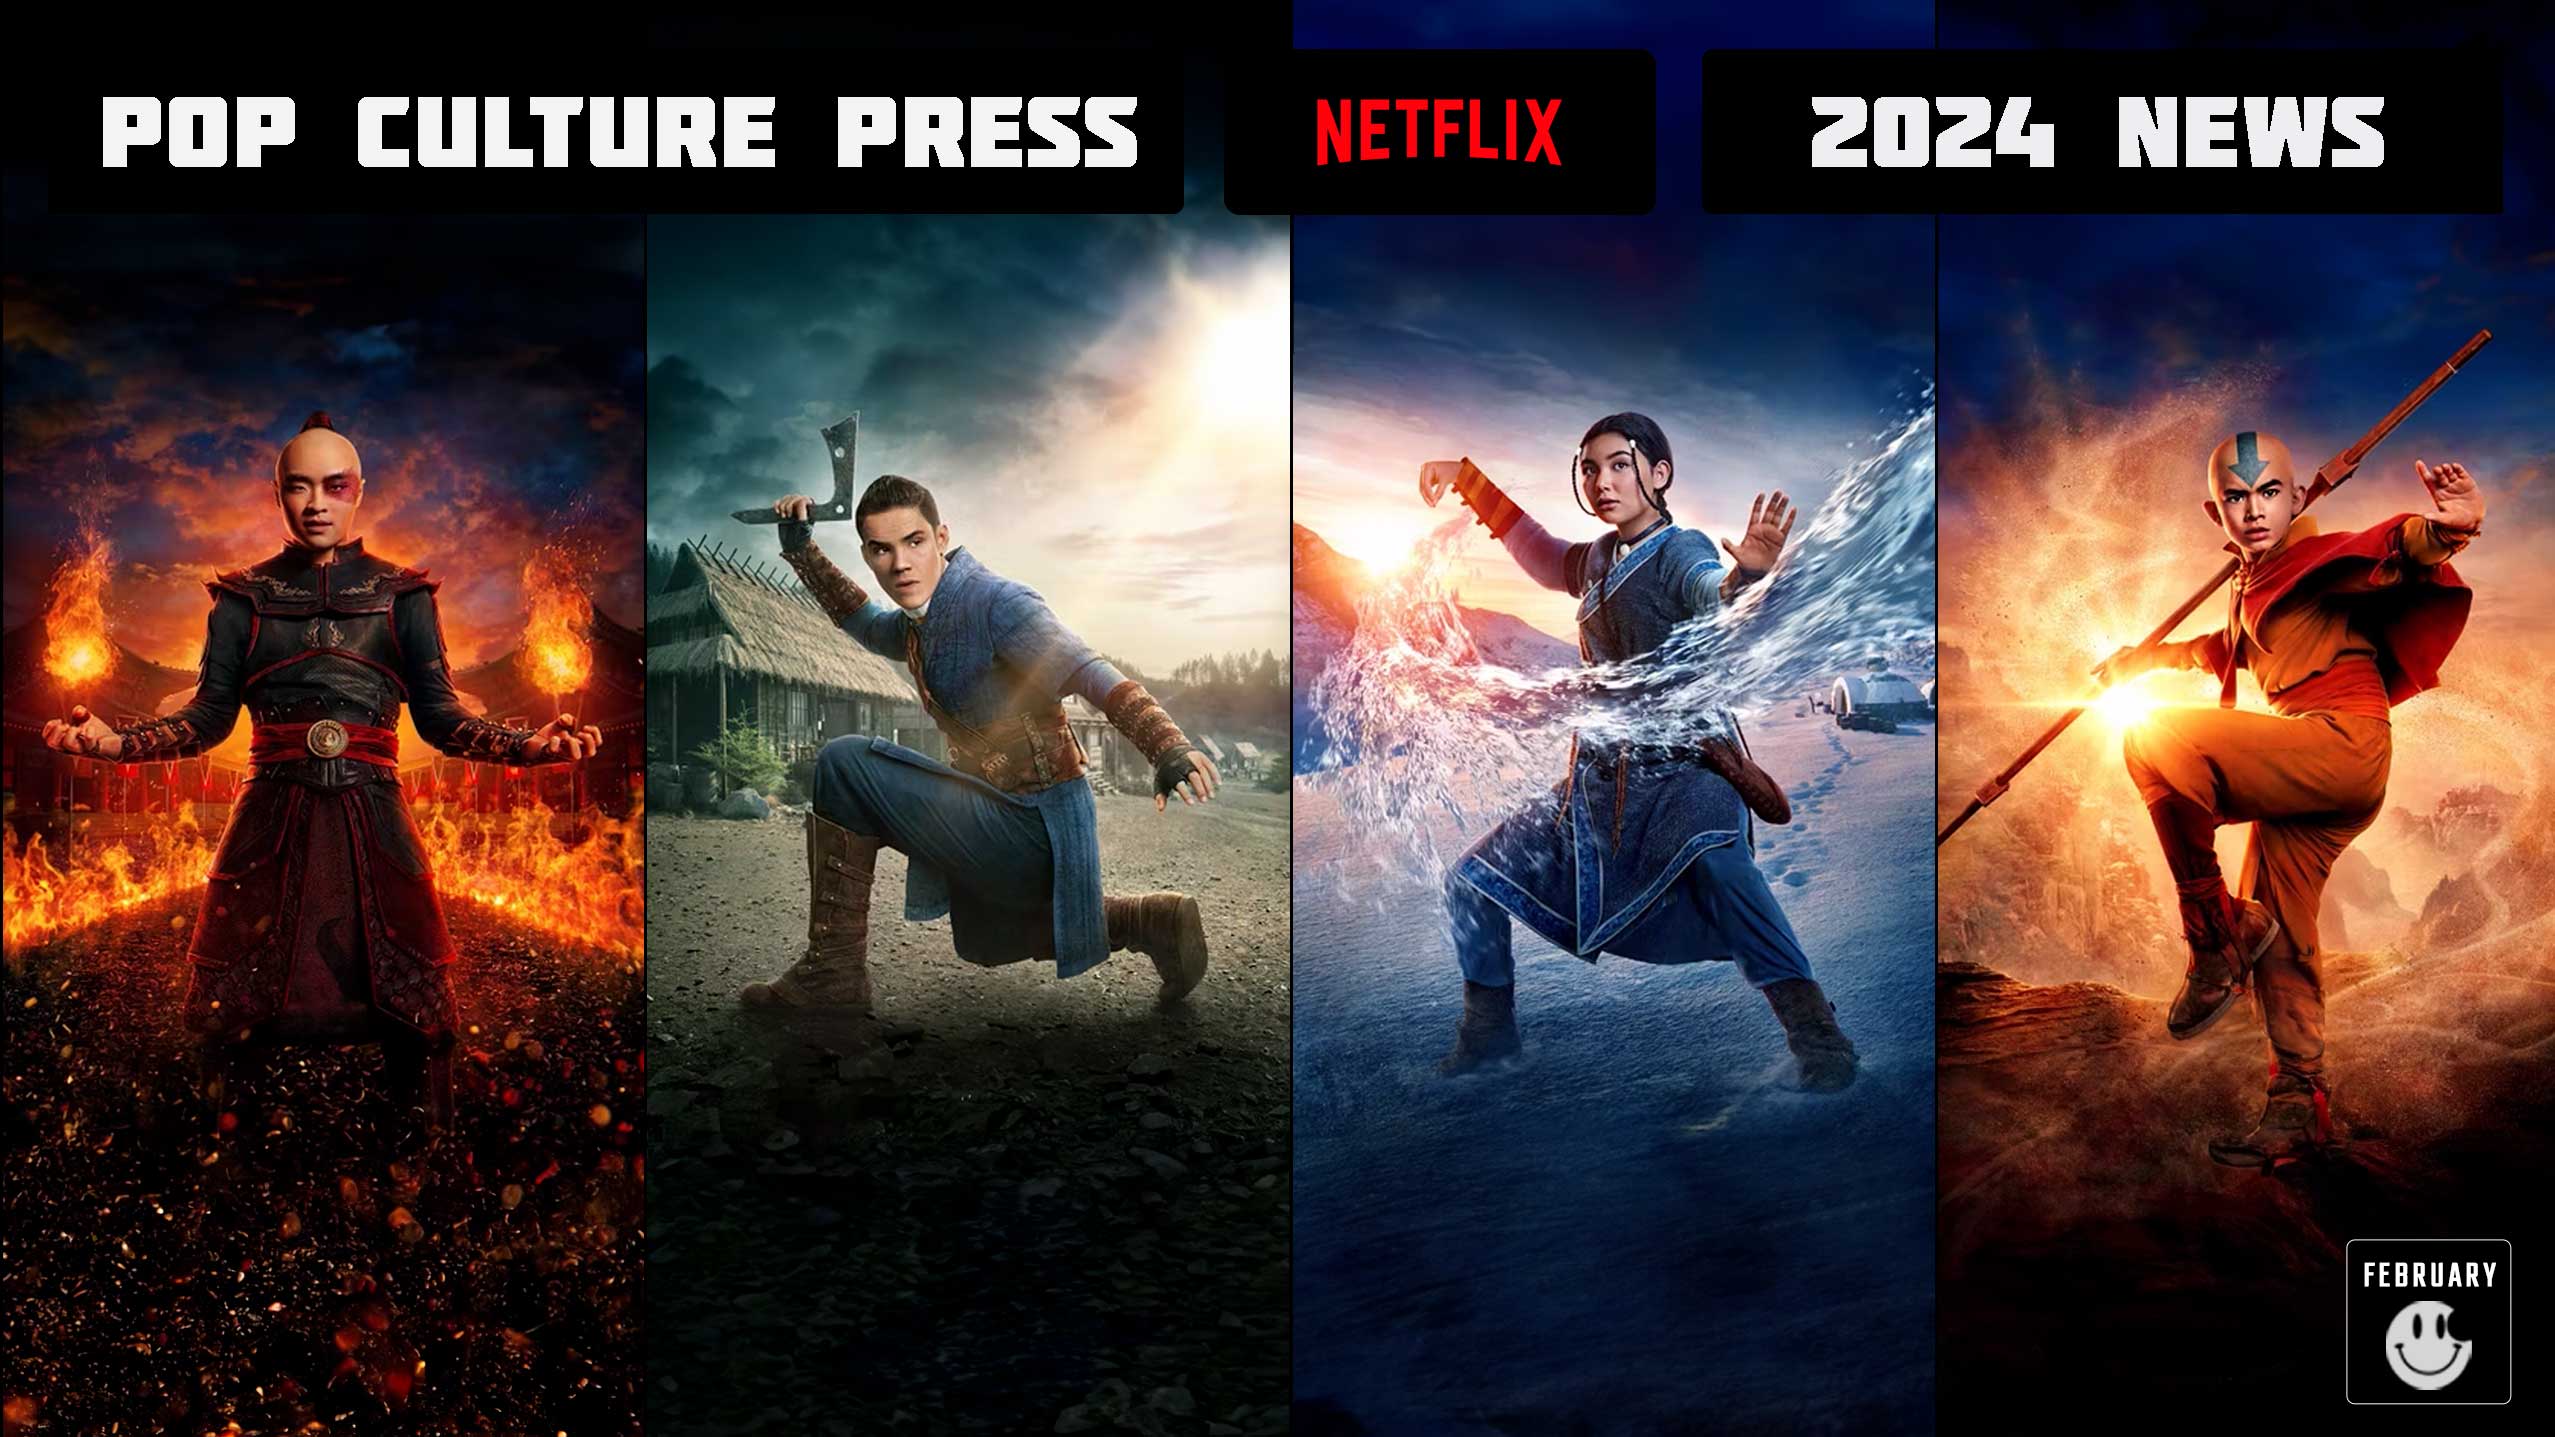 Netflix Avatar The Last Airbender Cast Daniel Dae Kim Ian Ousley Elizabeth Yu Gordon Cormier